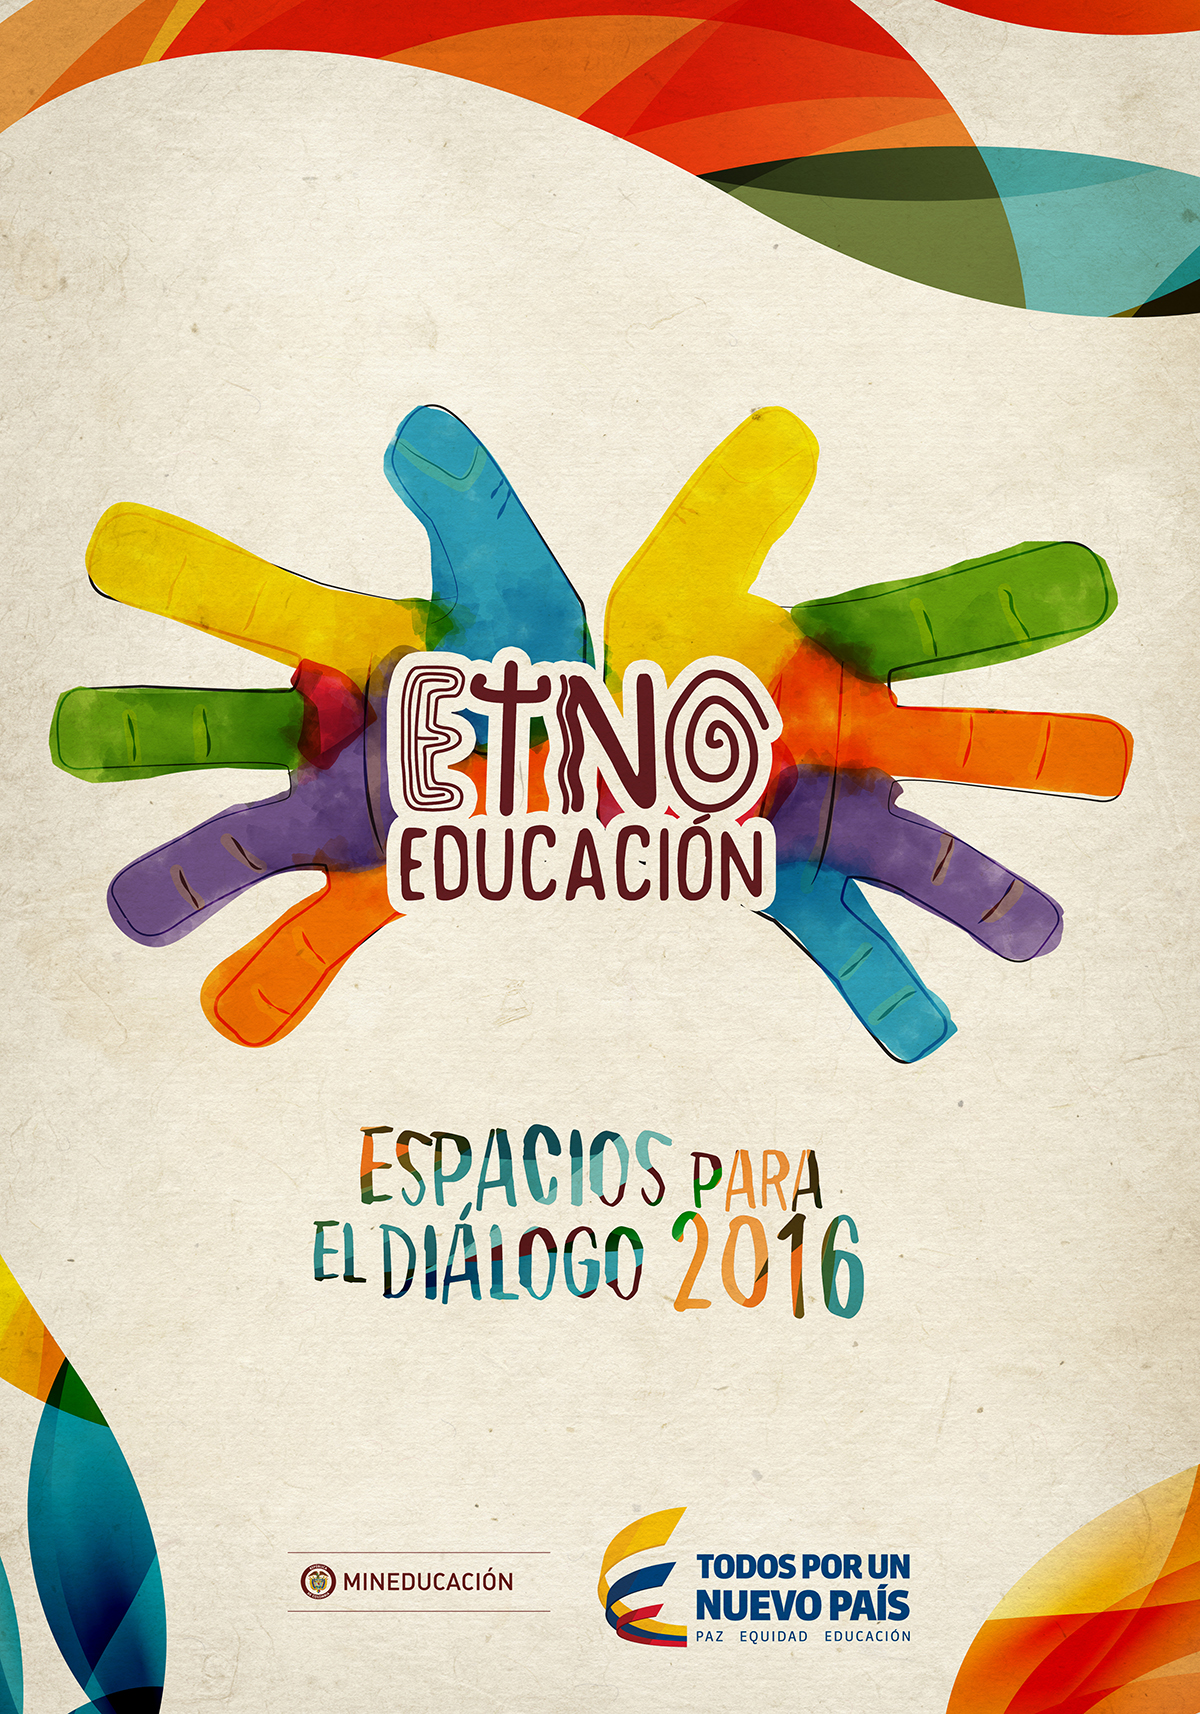 etno Manos educación ministerio de educacion colores inclusion